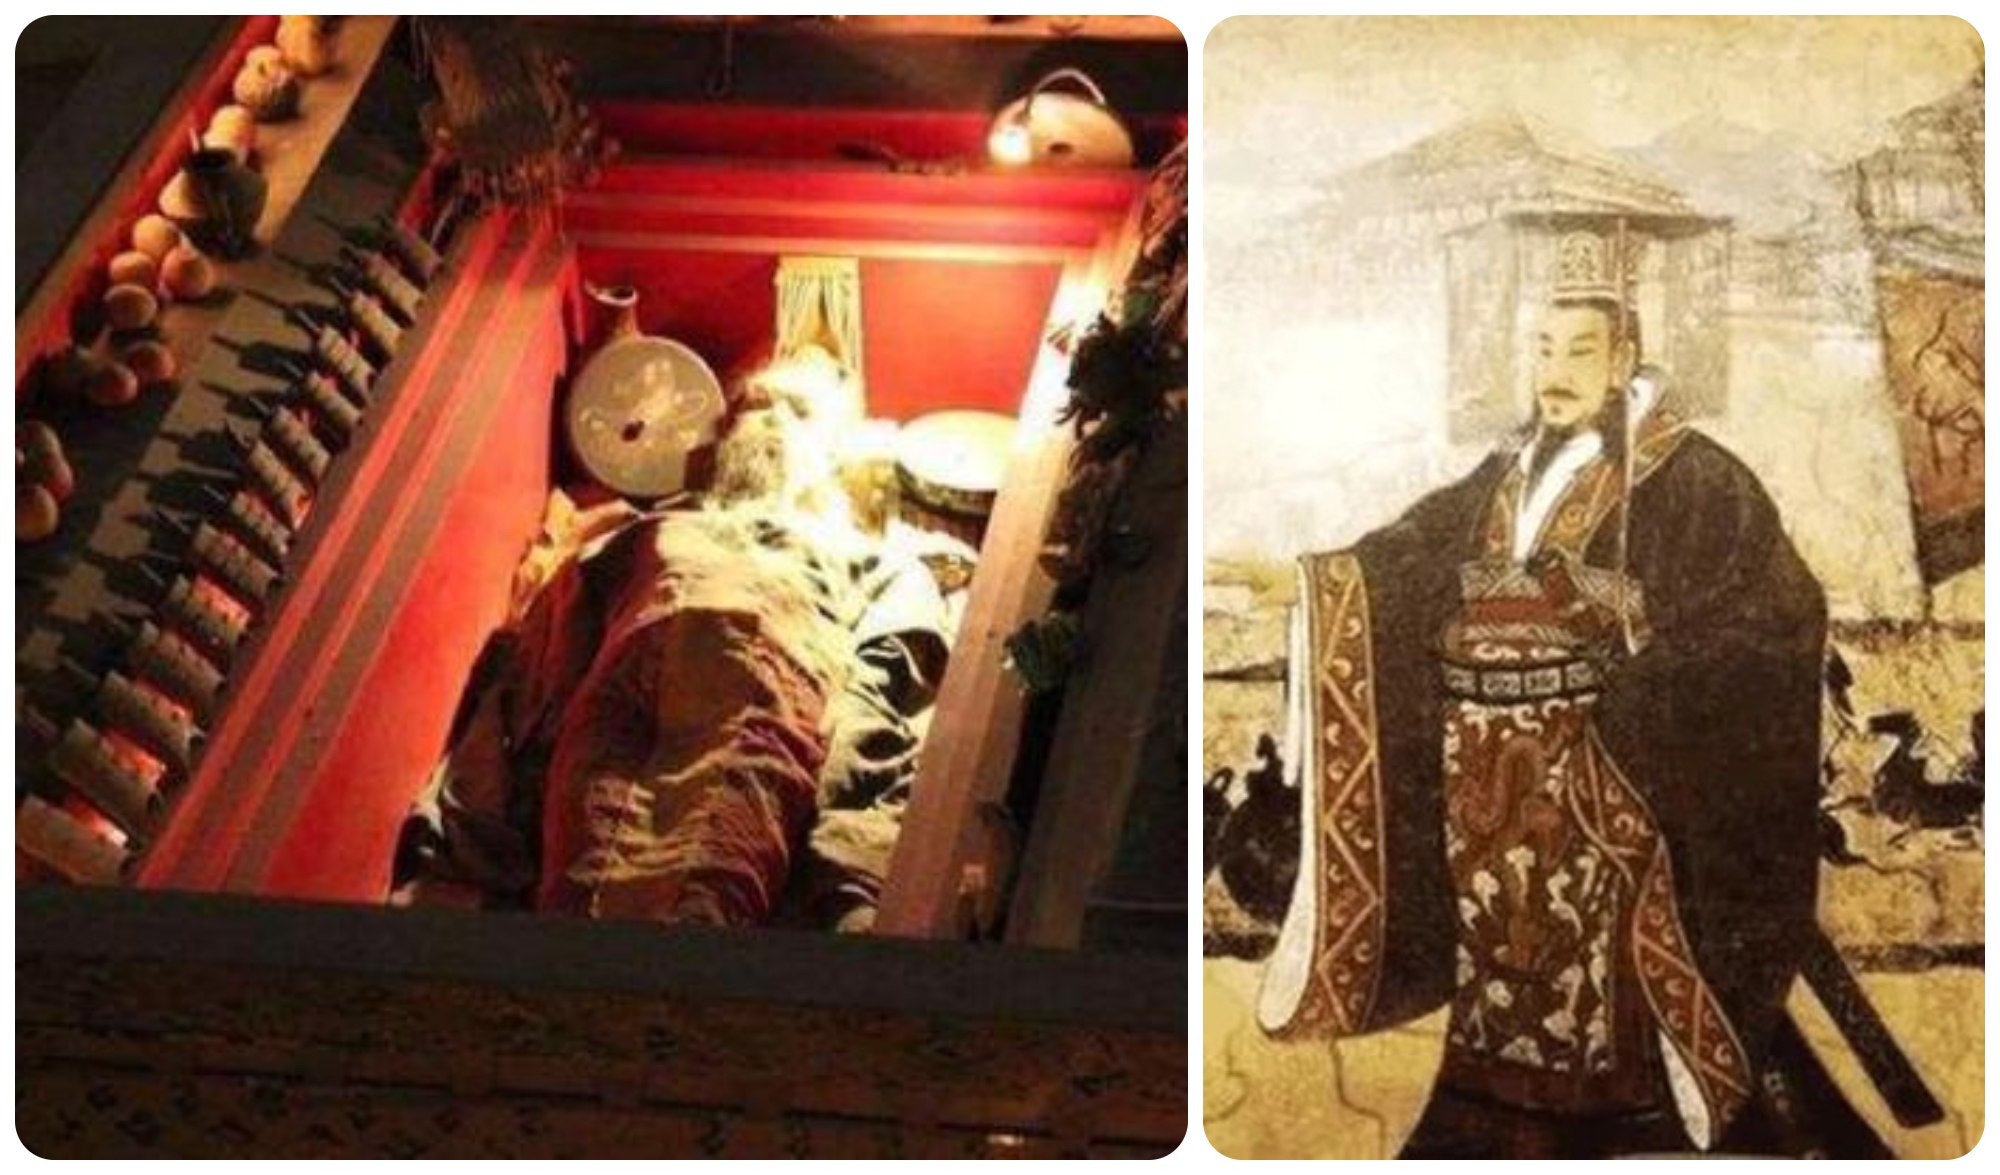 Lăng mộ của Tần Thủy Hoàng đến nay mới chỉ khai quật được lớp ngoài (ảnh: Daynews)